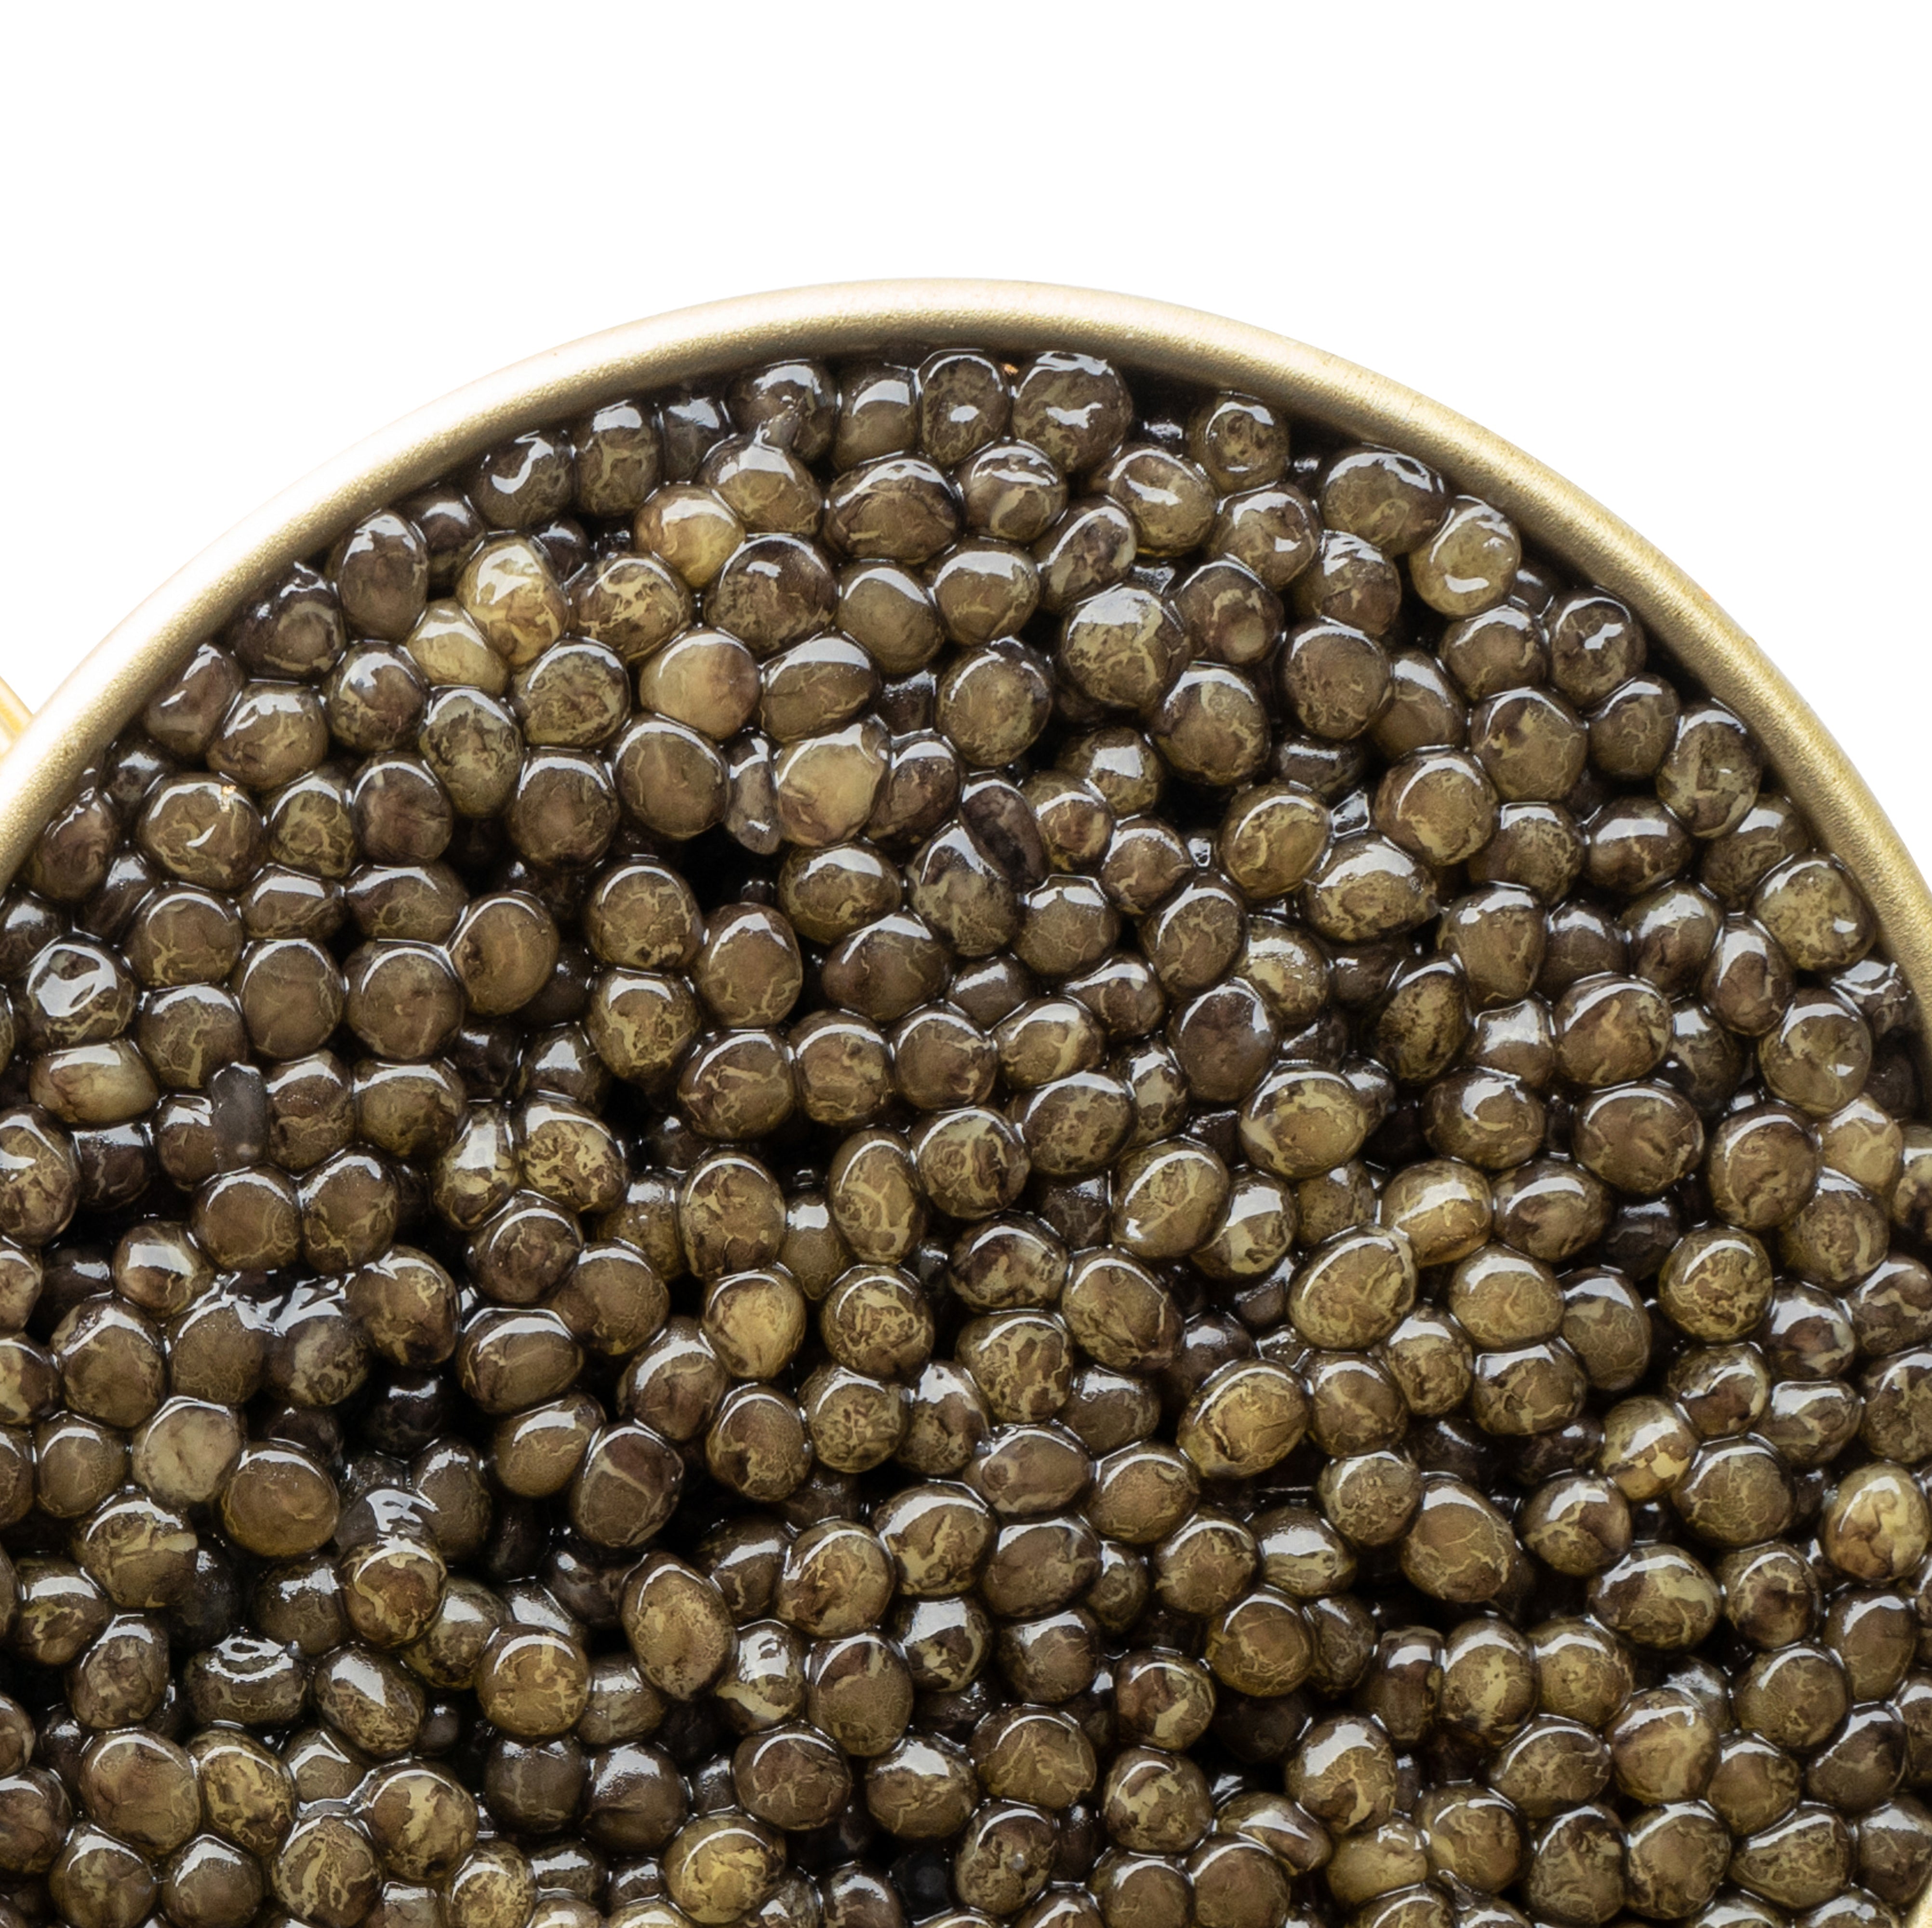 Grand Selection Oscietra Caviar